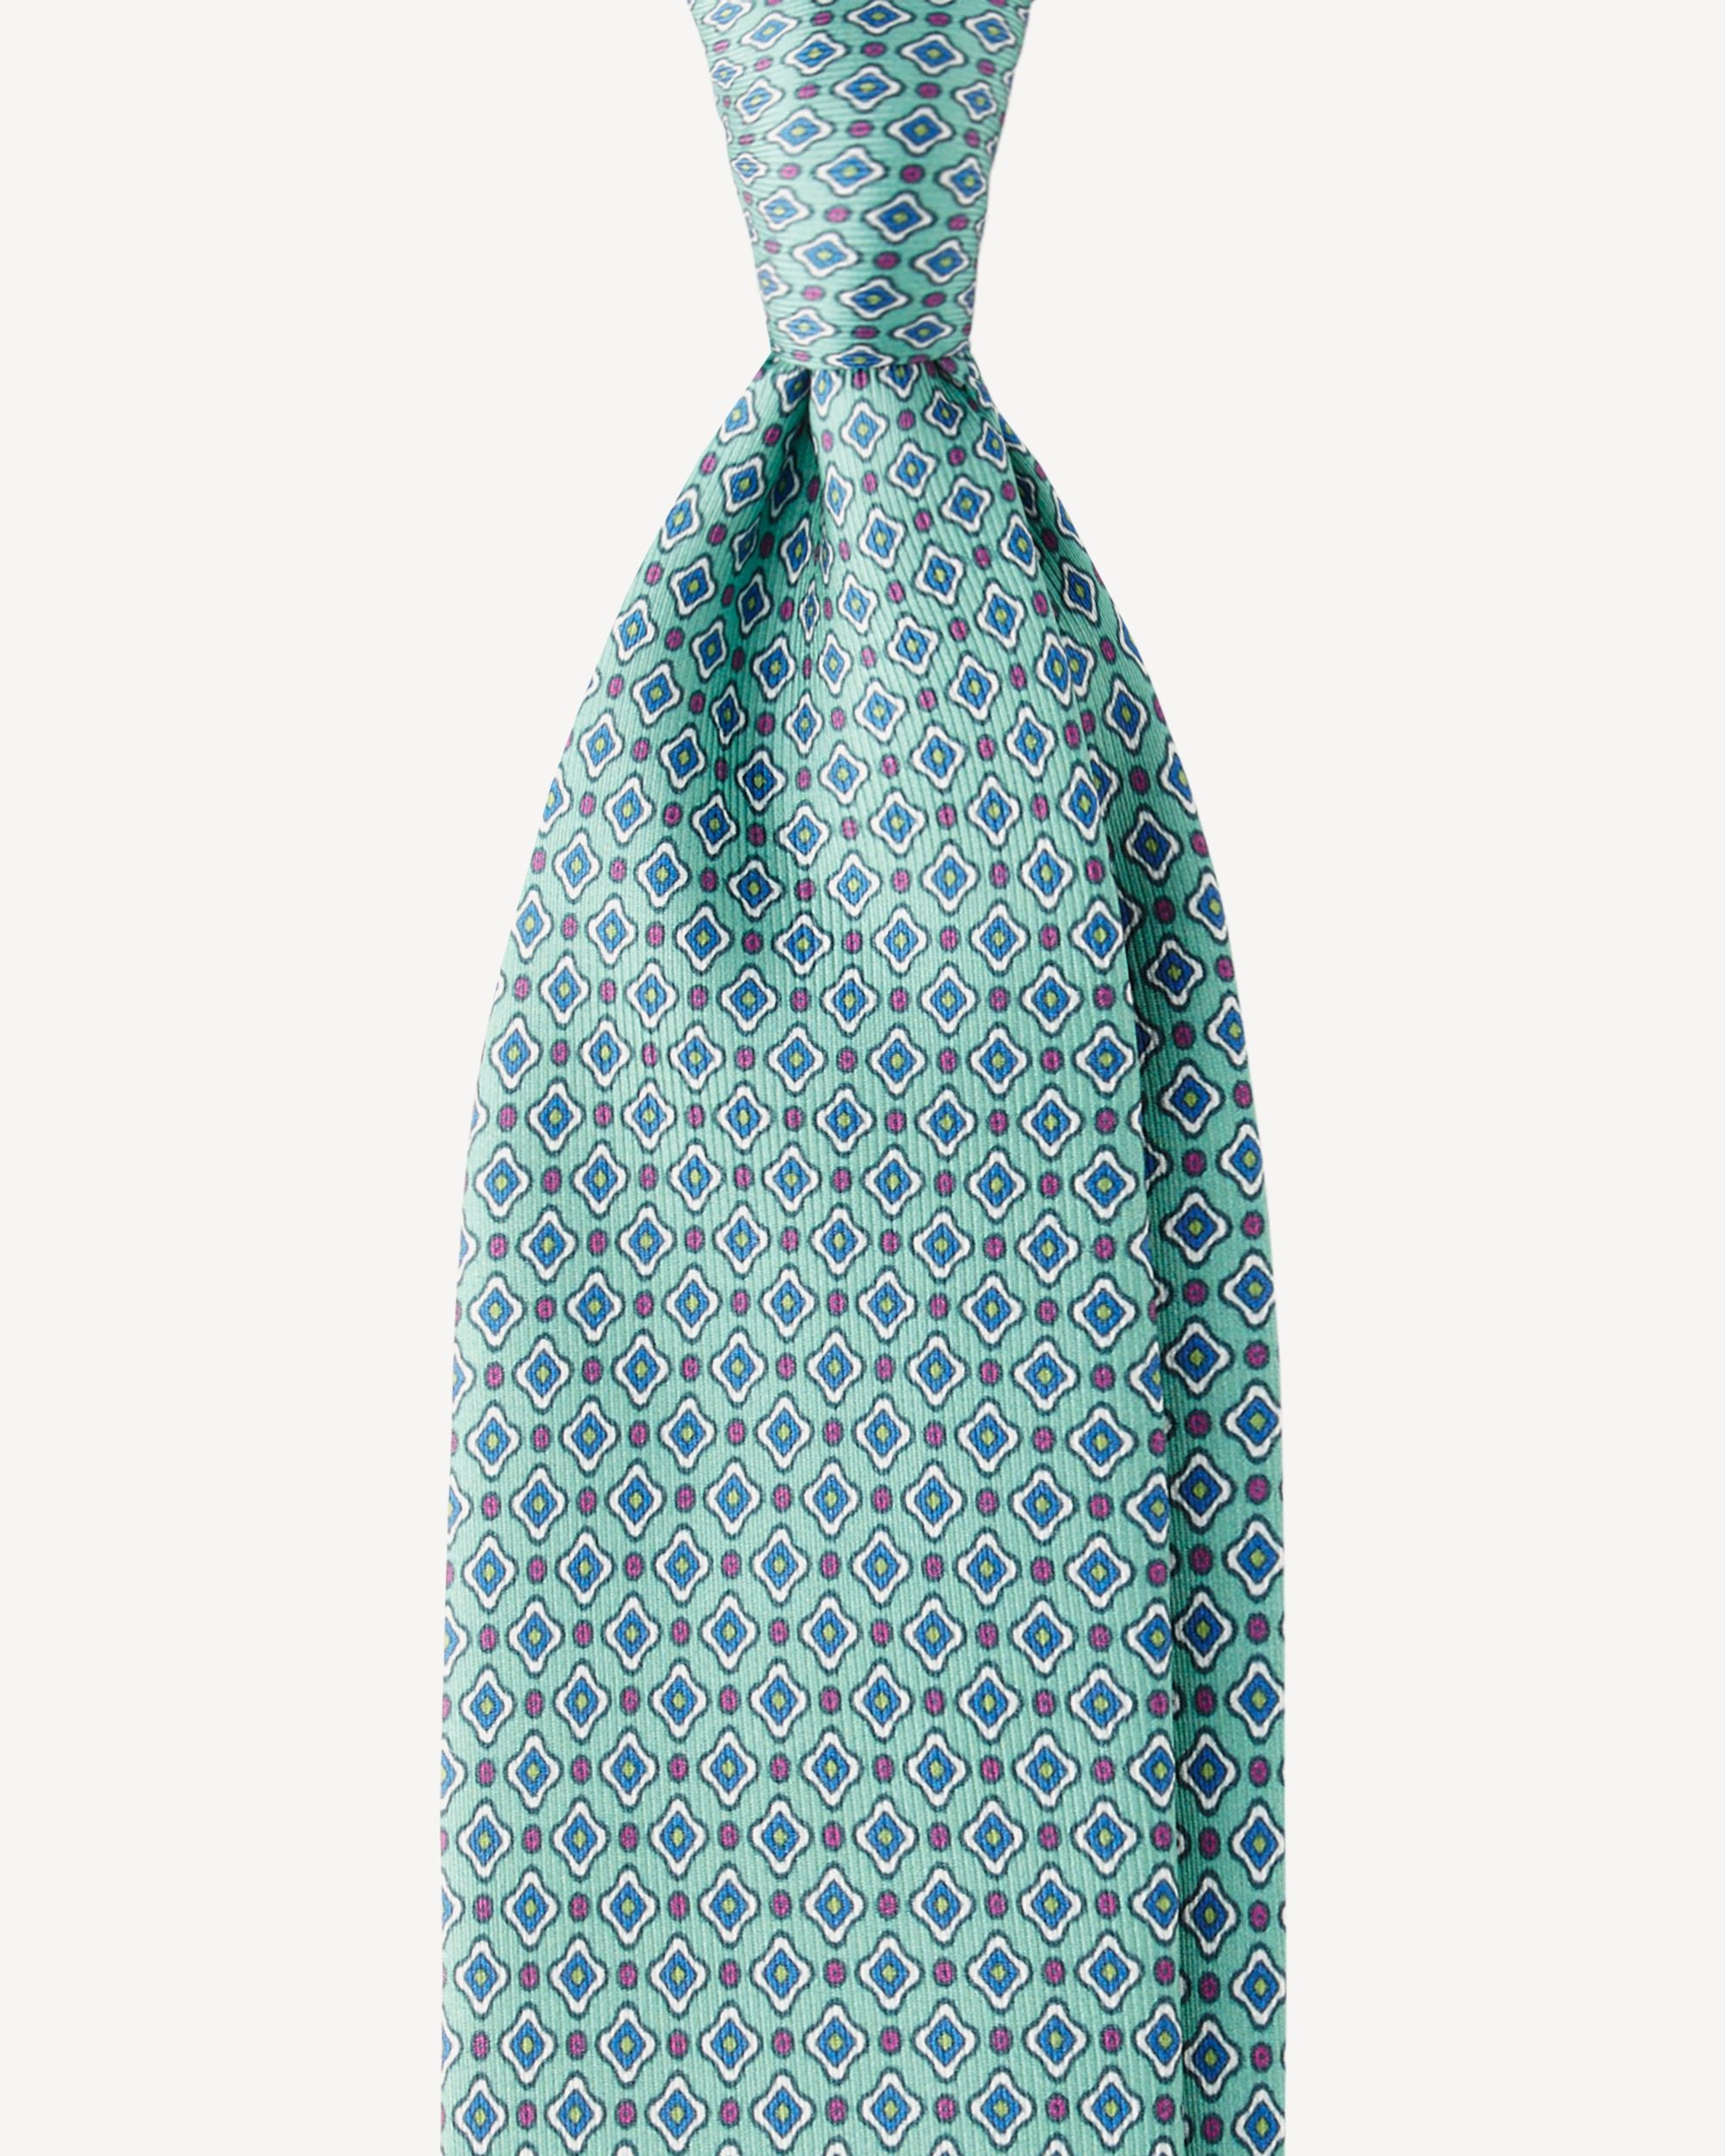 Krawatte in grün